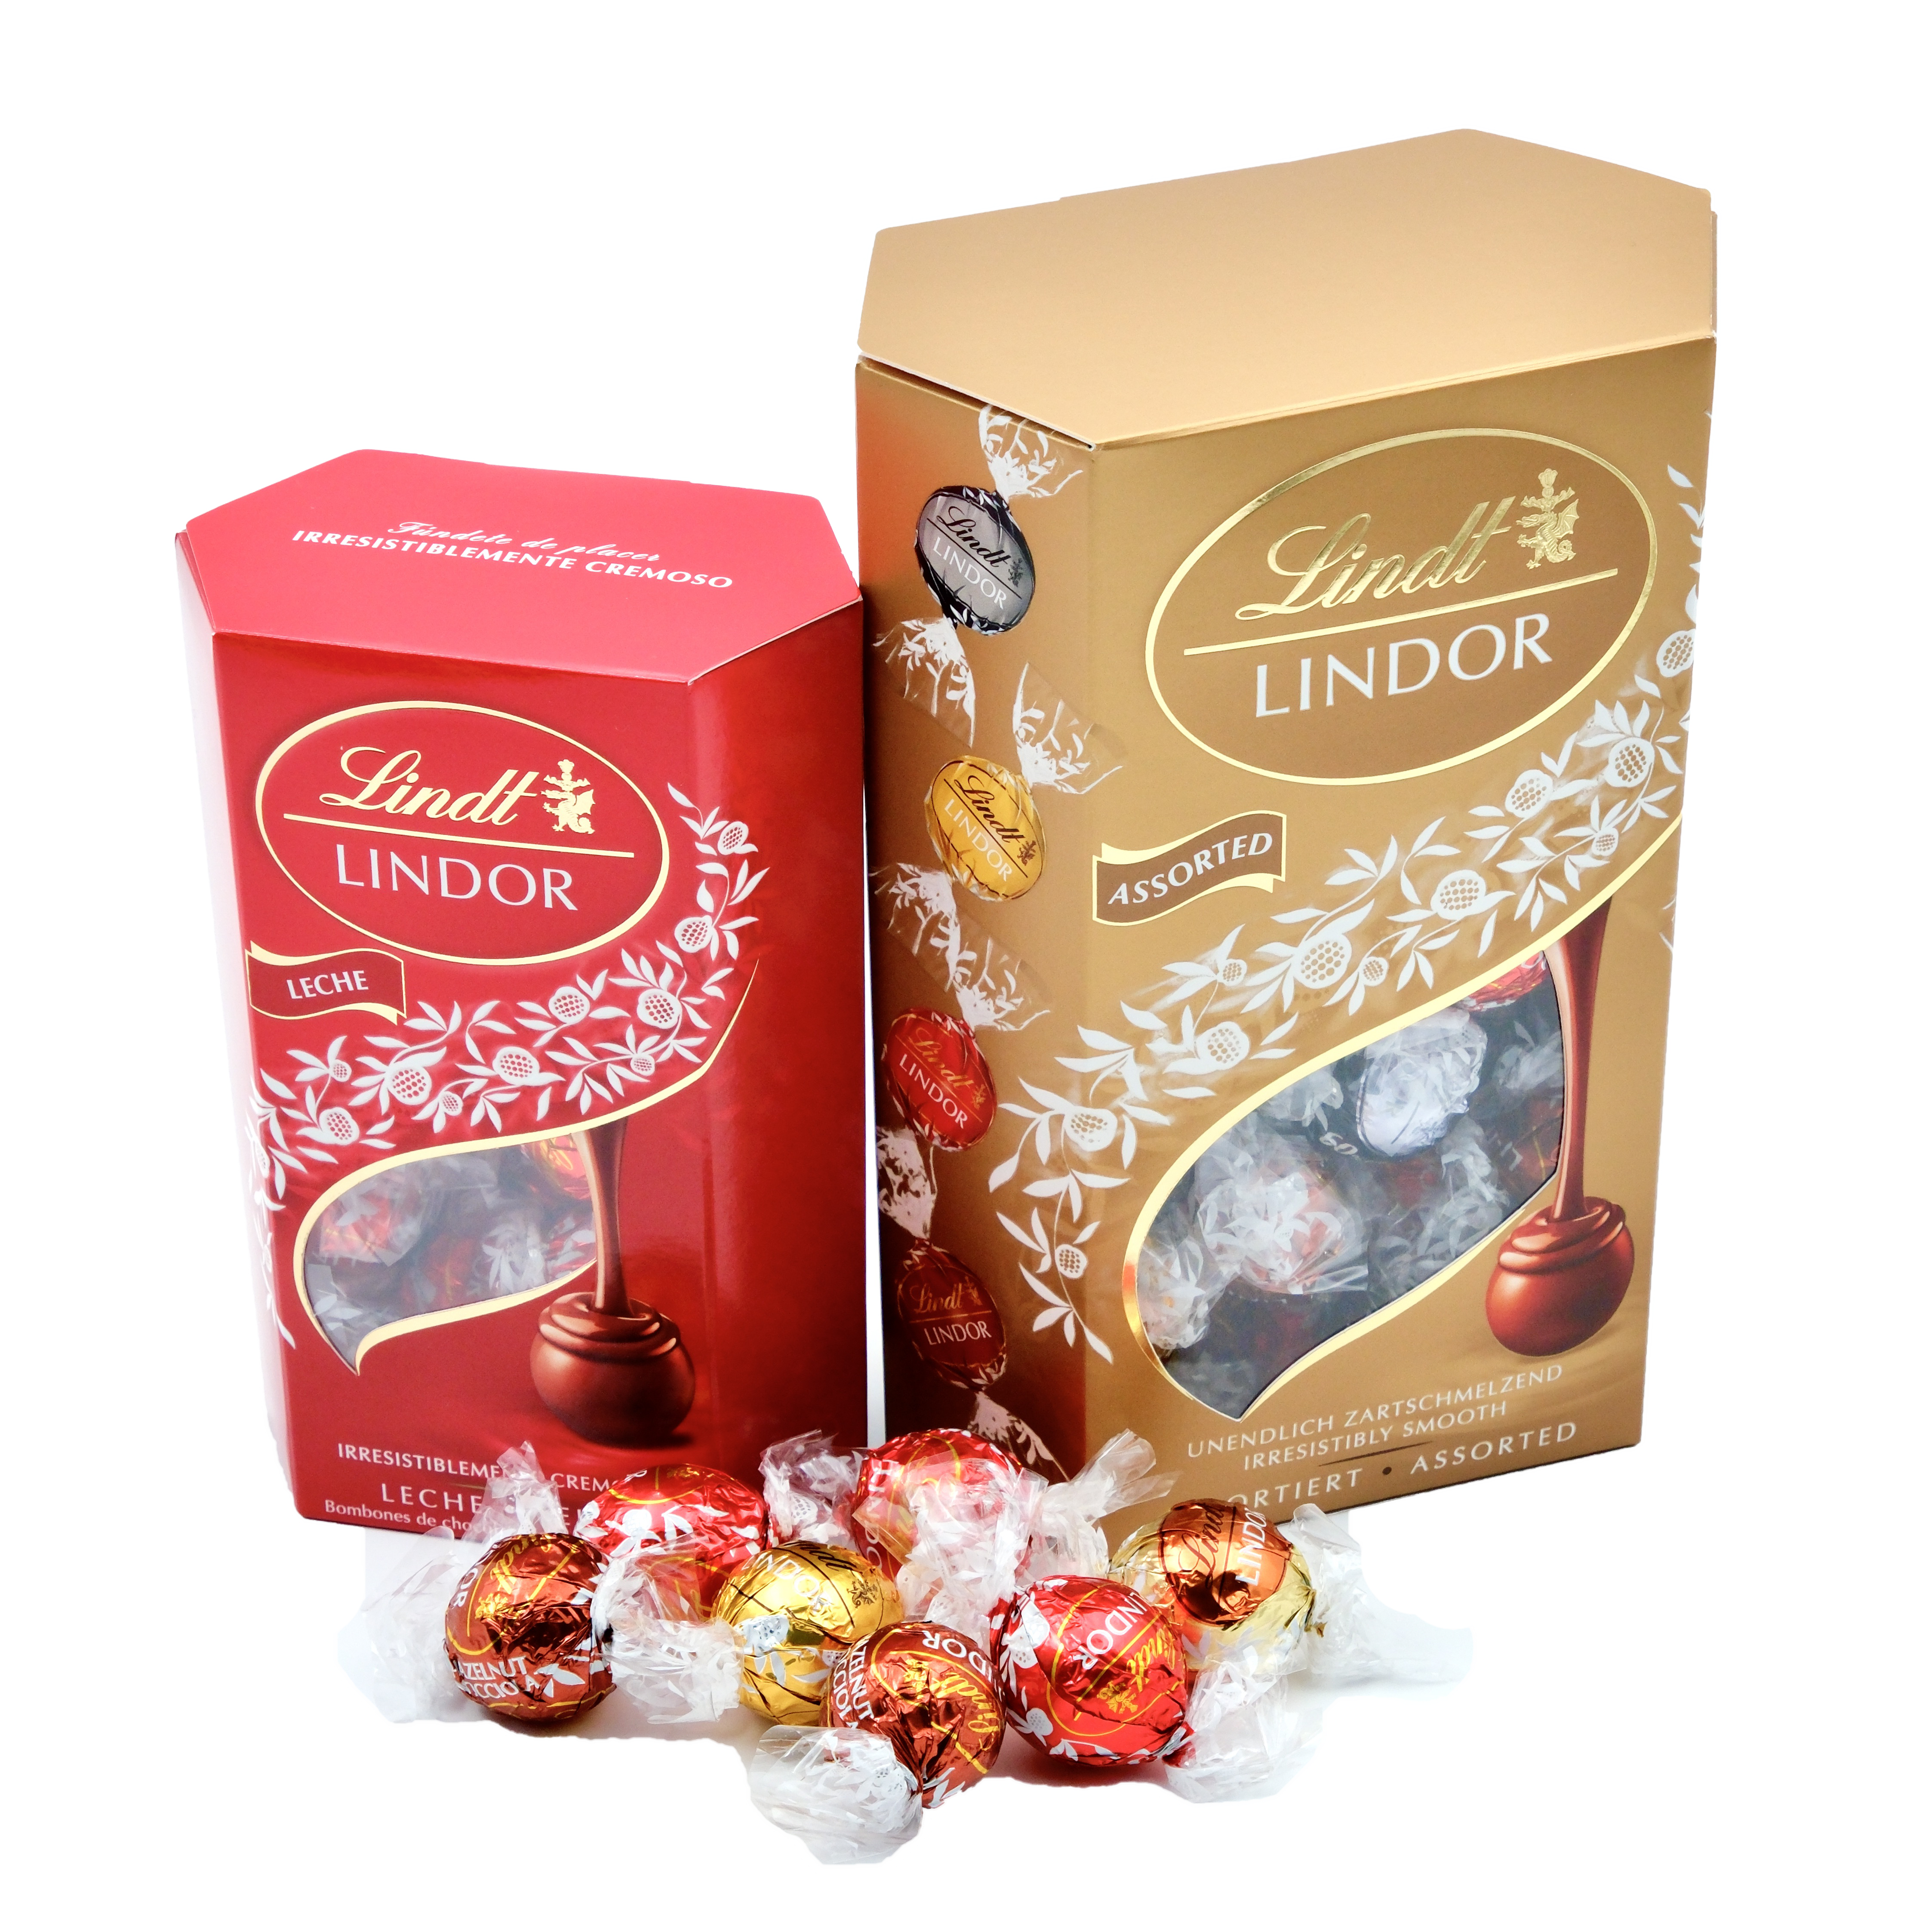 Lindt Chocolats Lindor Double Chocolate, 500 g - Boutique en ligne